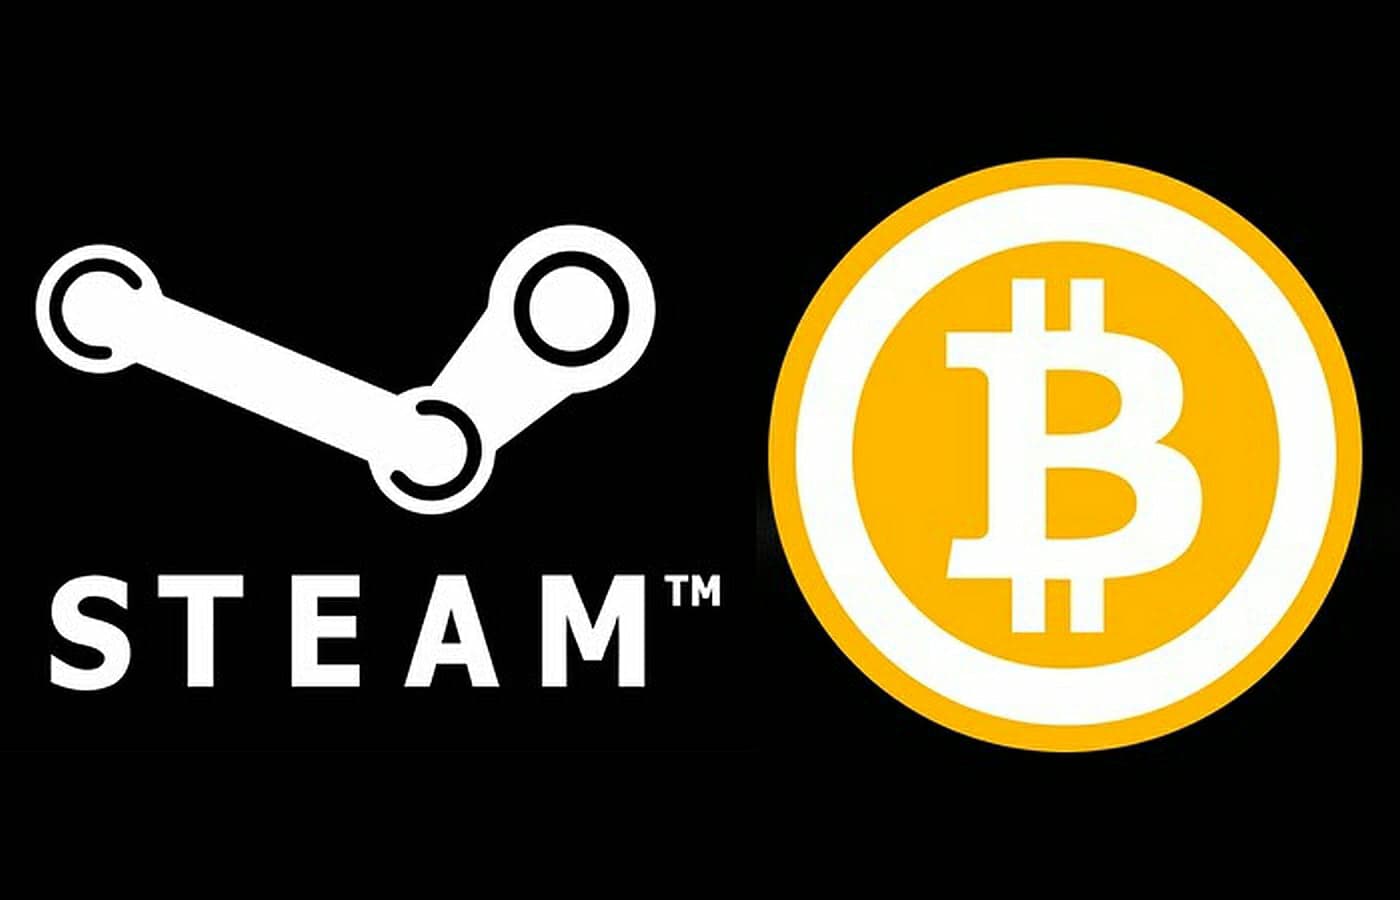 My game steam. Стим. Стим саппорт. Steam Bitcoin. Valve Steam Steam-игры.